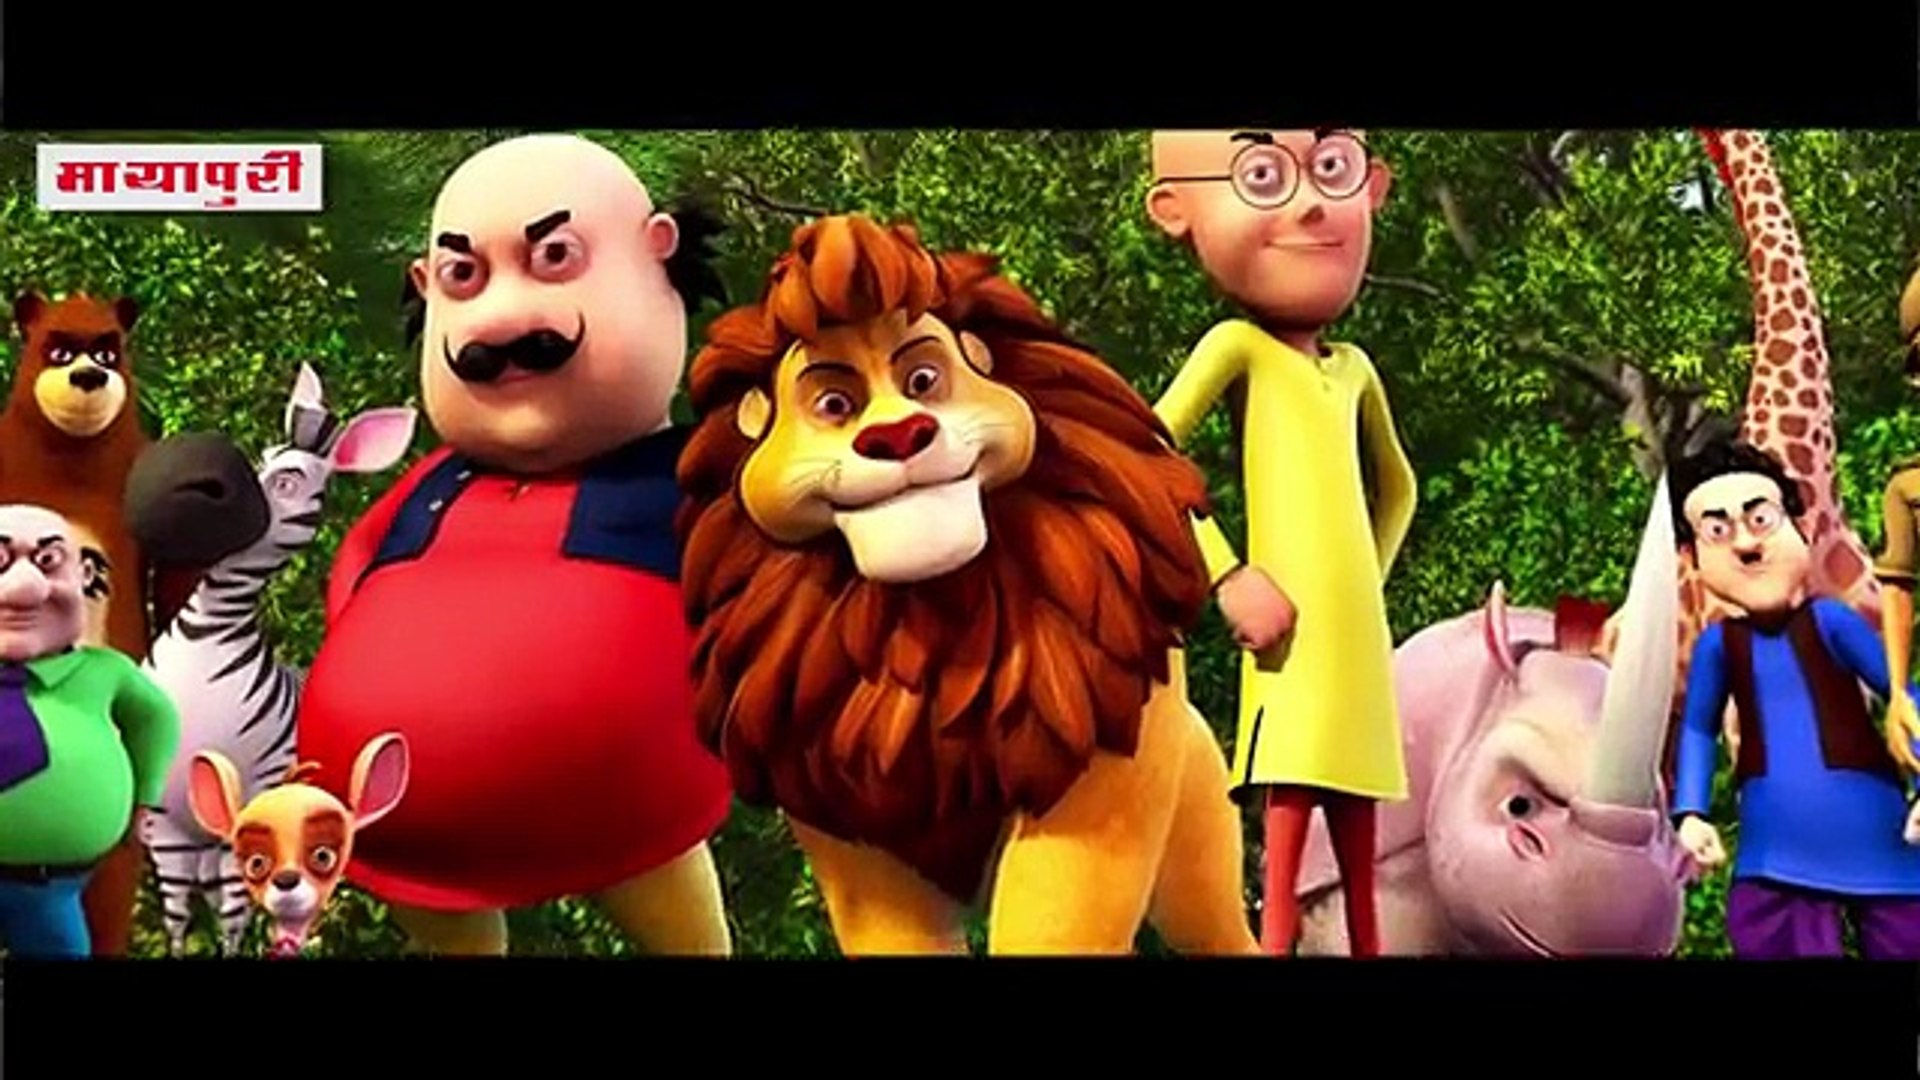 motu patlu king of kings movie trailer launched motu patlu video motu patlu king of kings movie trai